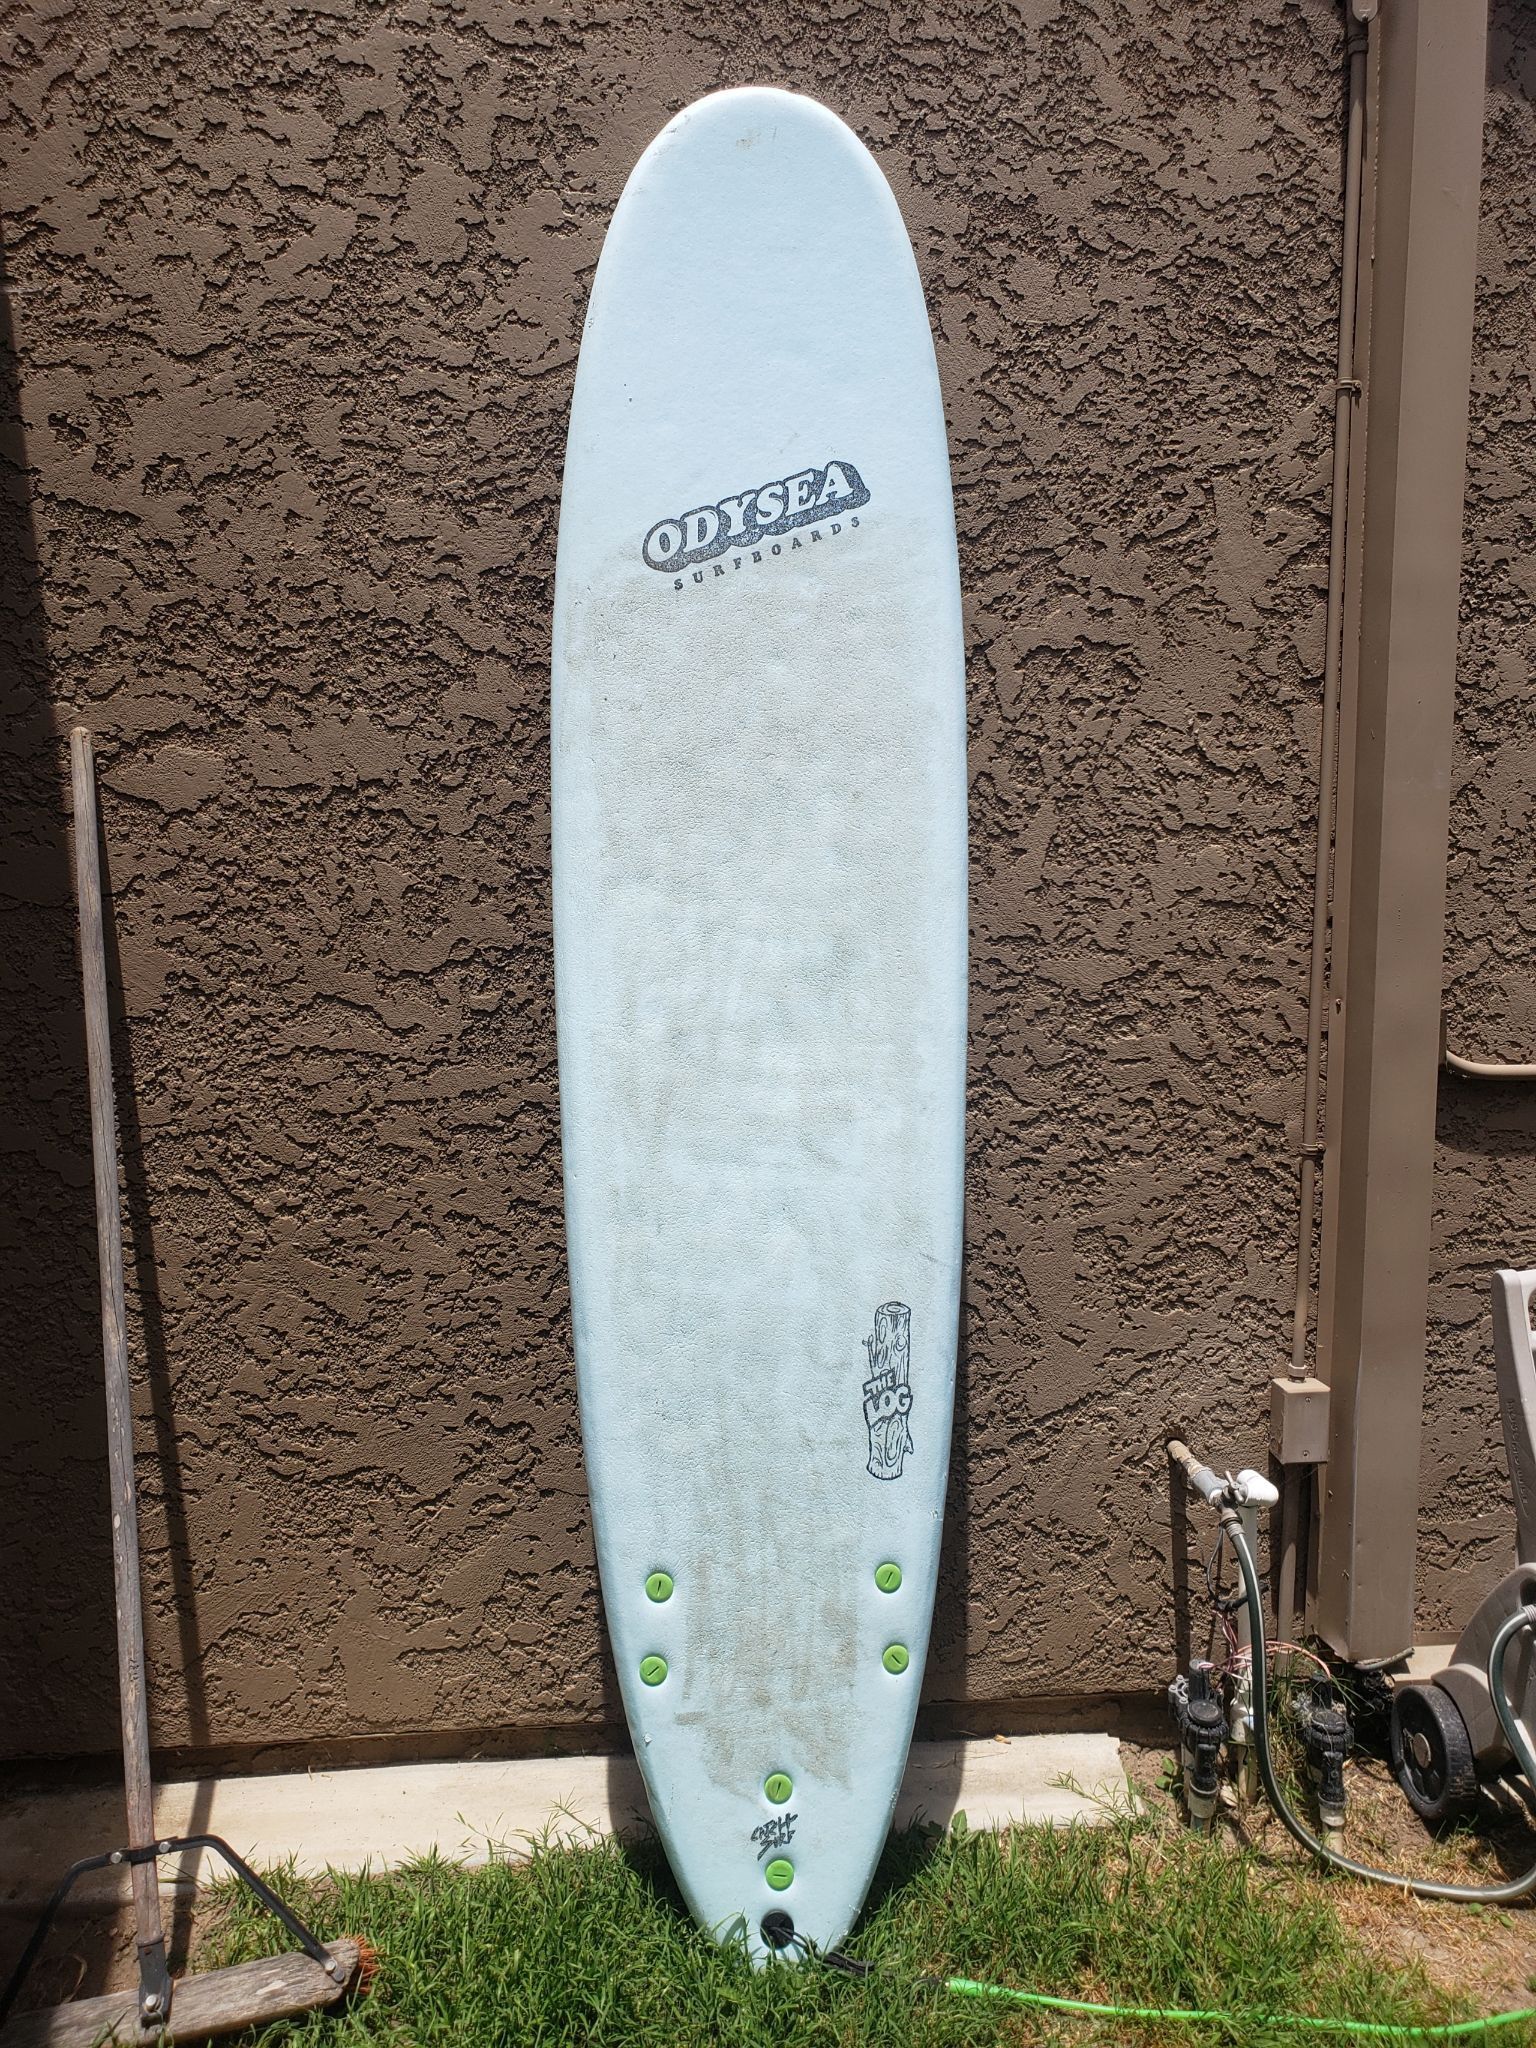 Odysea Surfboard